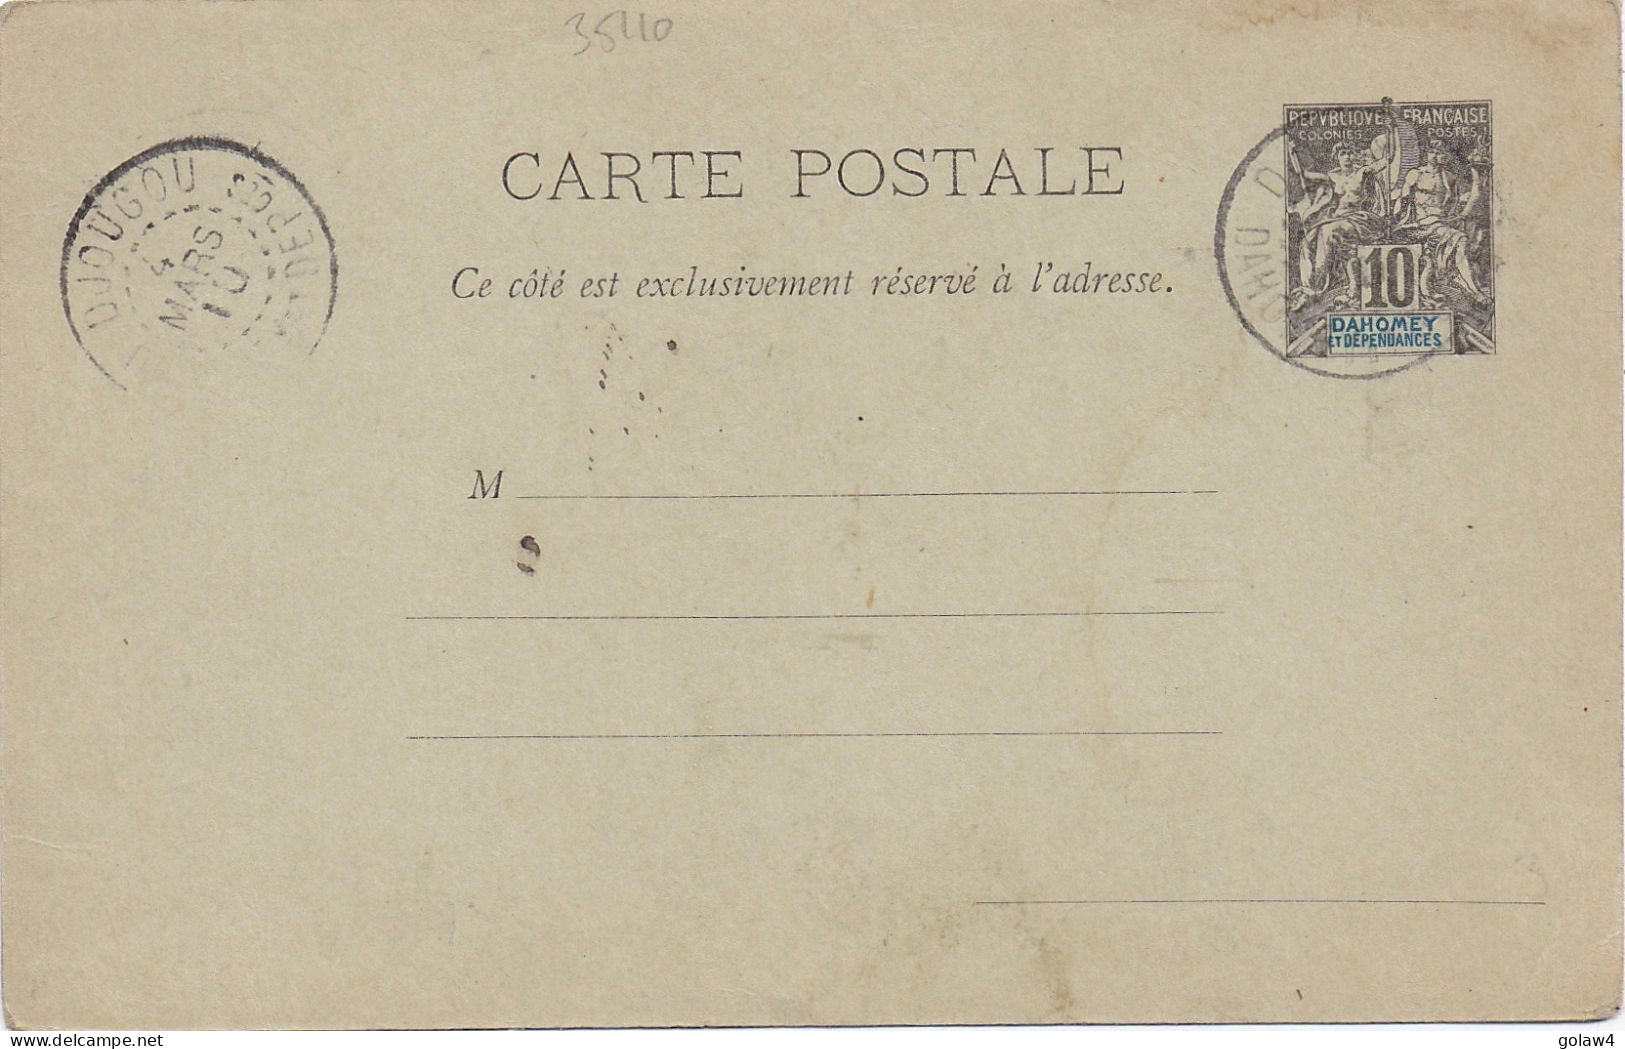 35110# ENTIER POSTAL CARTE POSTALE Obl DJOUGOU DAHOMEY ET DEPENDANCES 1910 STATIONERY GANZSACHE - Covers & Documents